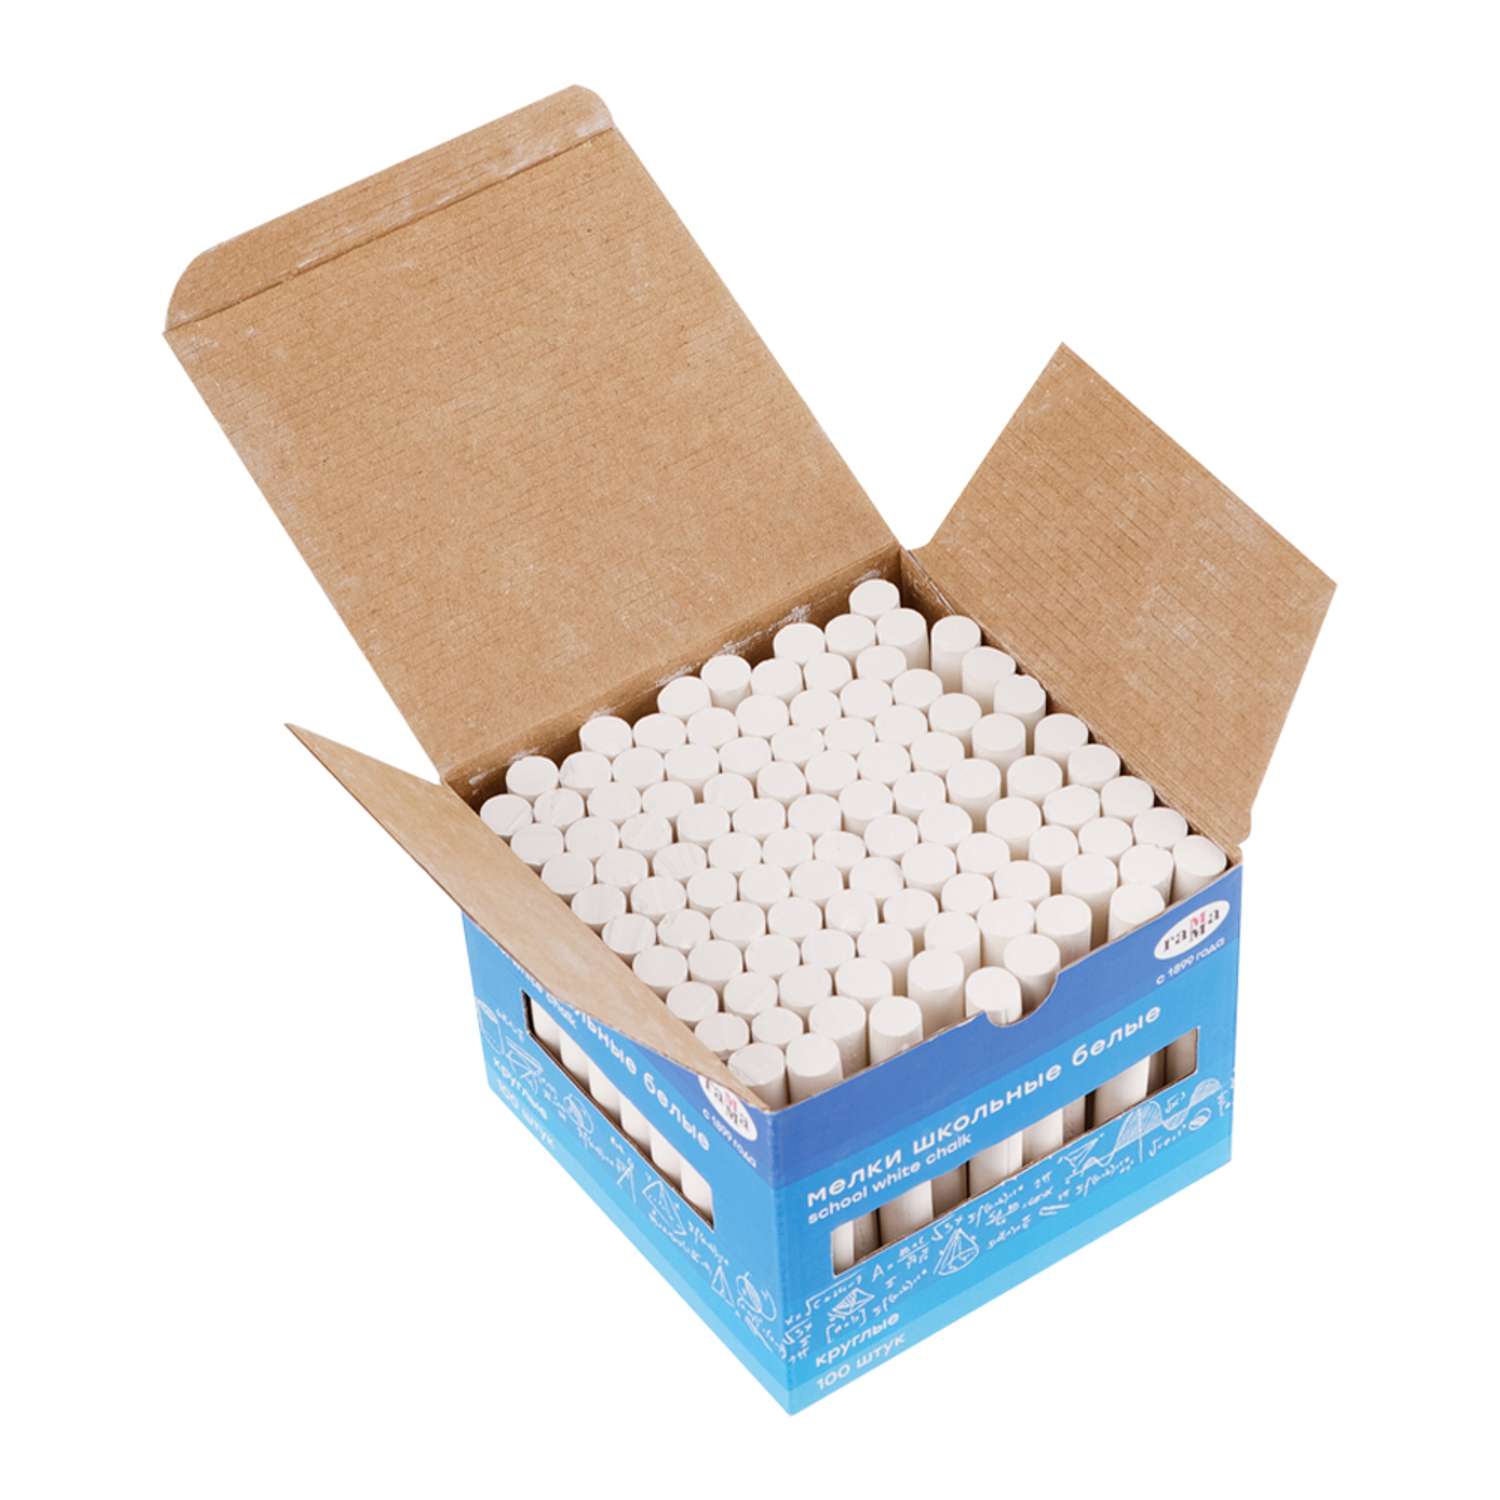 Мелки школьные Гамма белые 100 шт мягкие круглые картонная коробка - фото 2